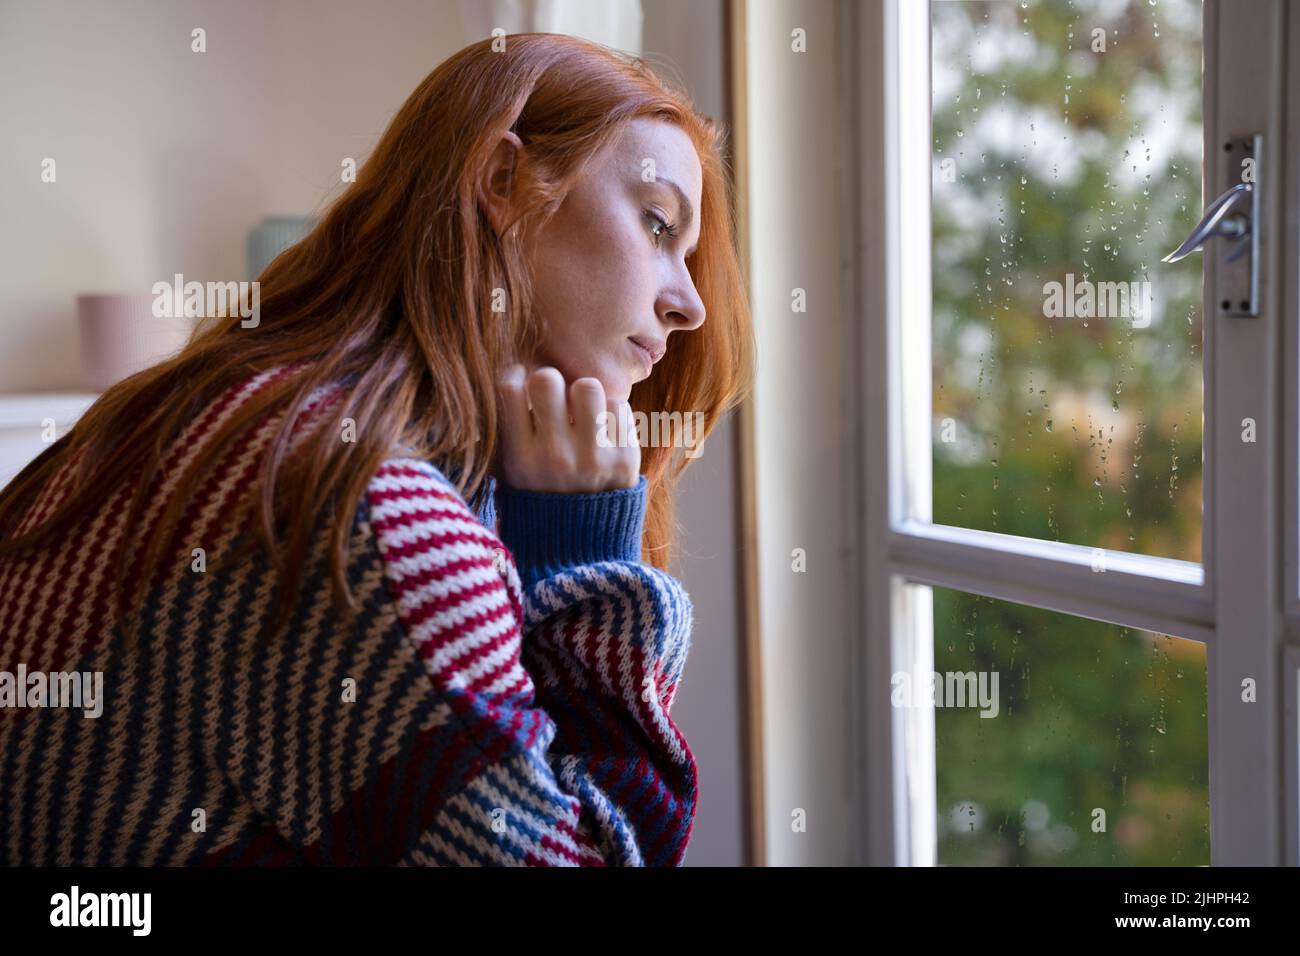 Mujer joven solitaria sintiéndose sola y emoción negativa Foto de stock